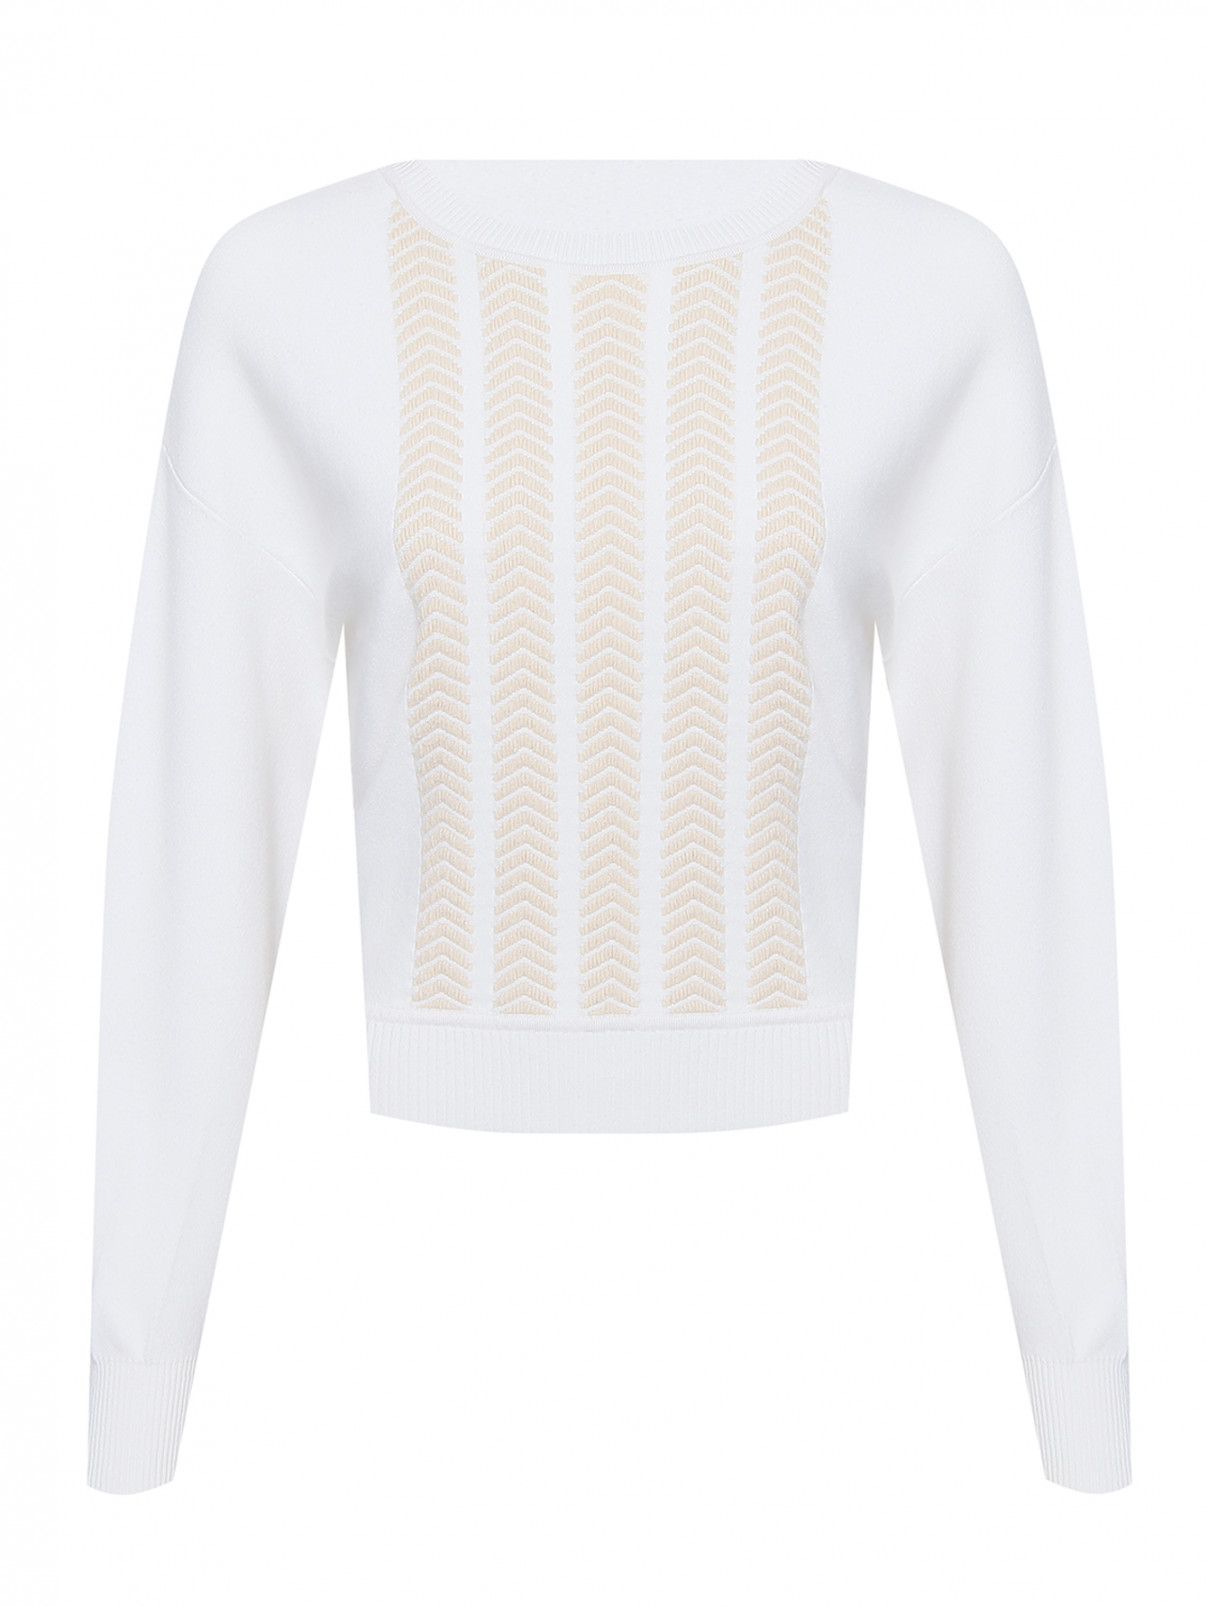 Джемпер свободного кроя с вышивкой Sportmax Code  –  Общий вид  – Цвет:  Белый